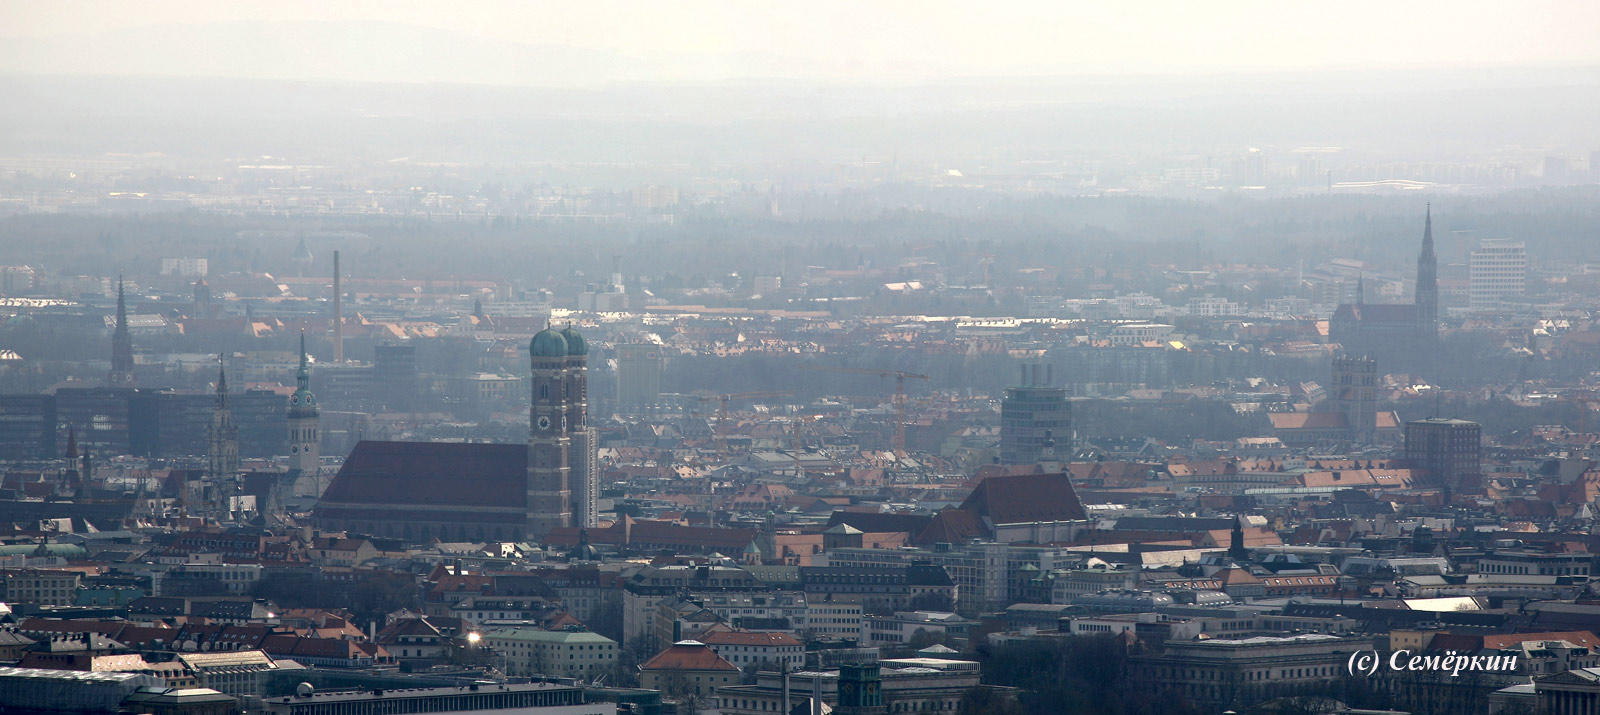 Панорамы Мюнхена с высоты птичьего полёта - Исторический центр, видно Петерскирхе